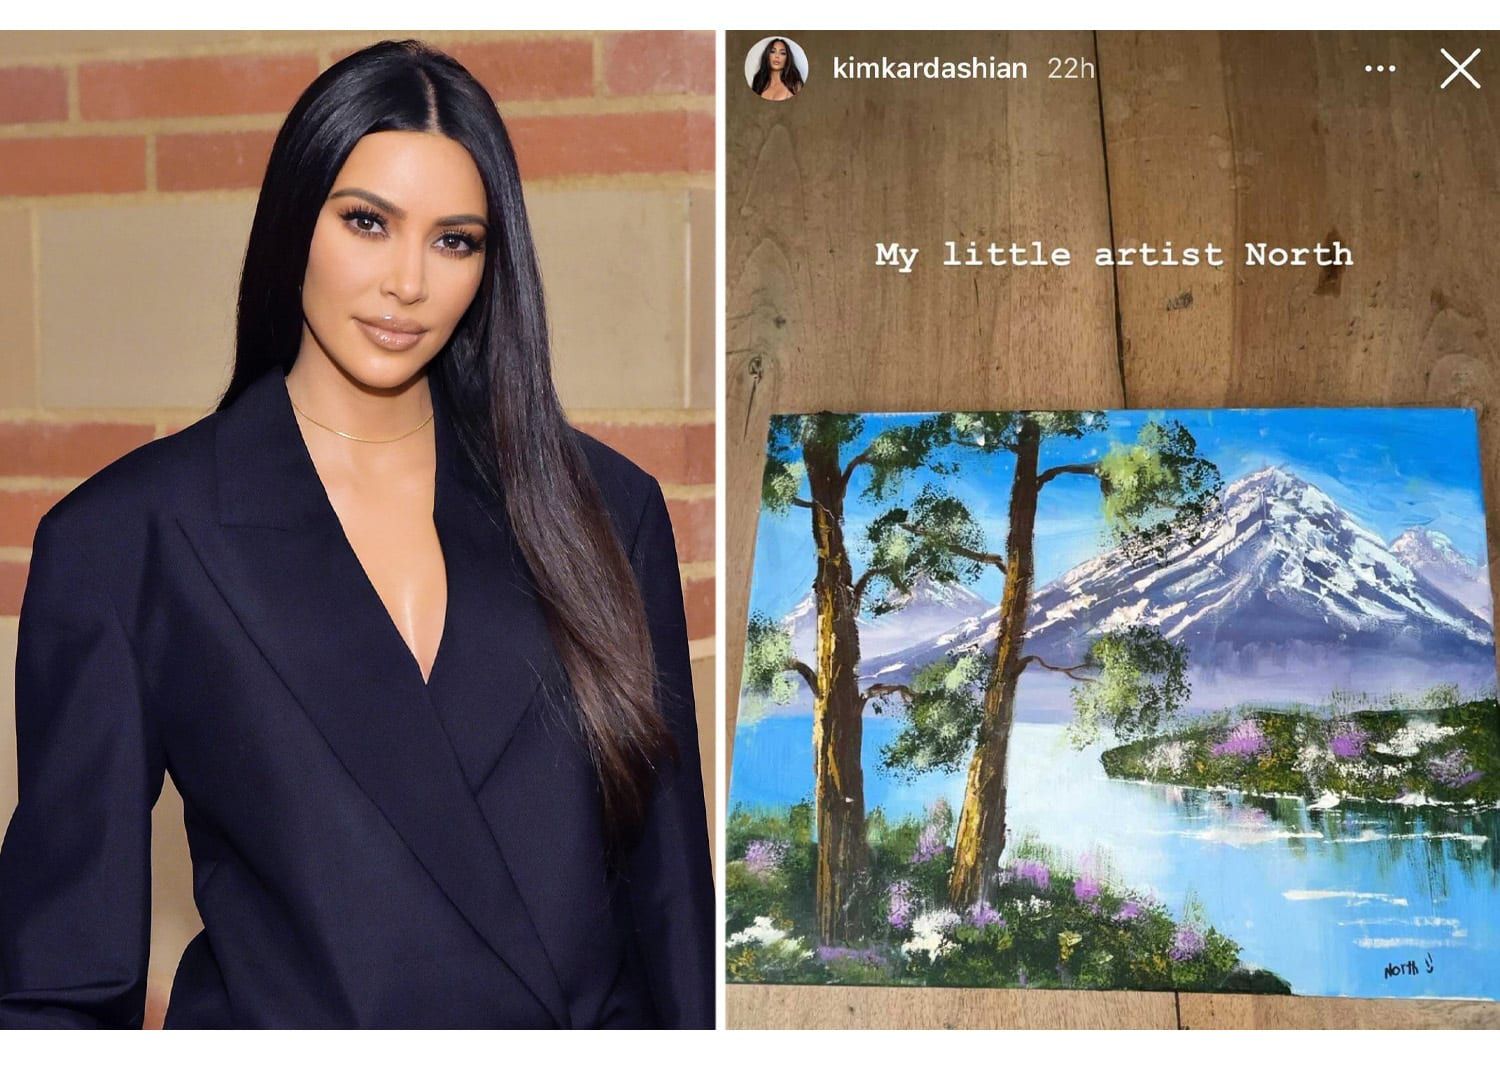 Интернет обвиняет Ким Кардашьян во лжи об искусстве Северо-Запада